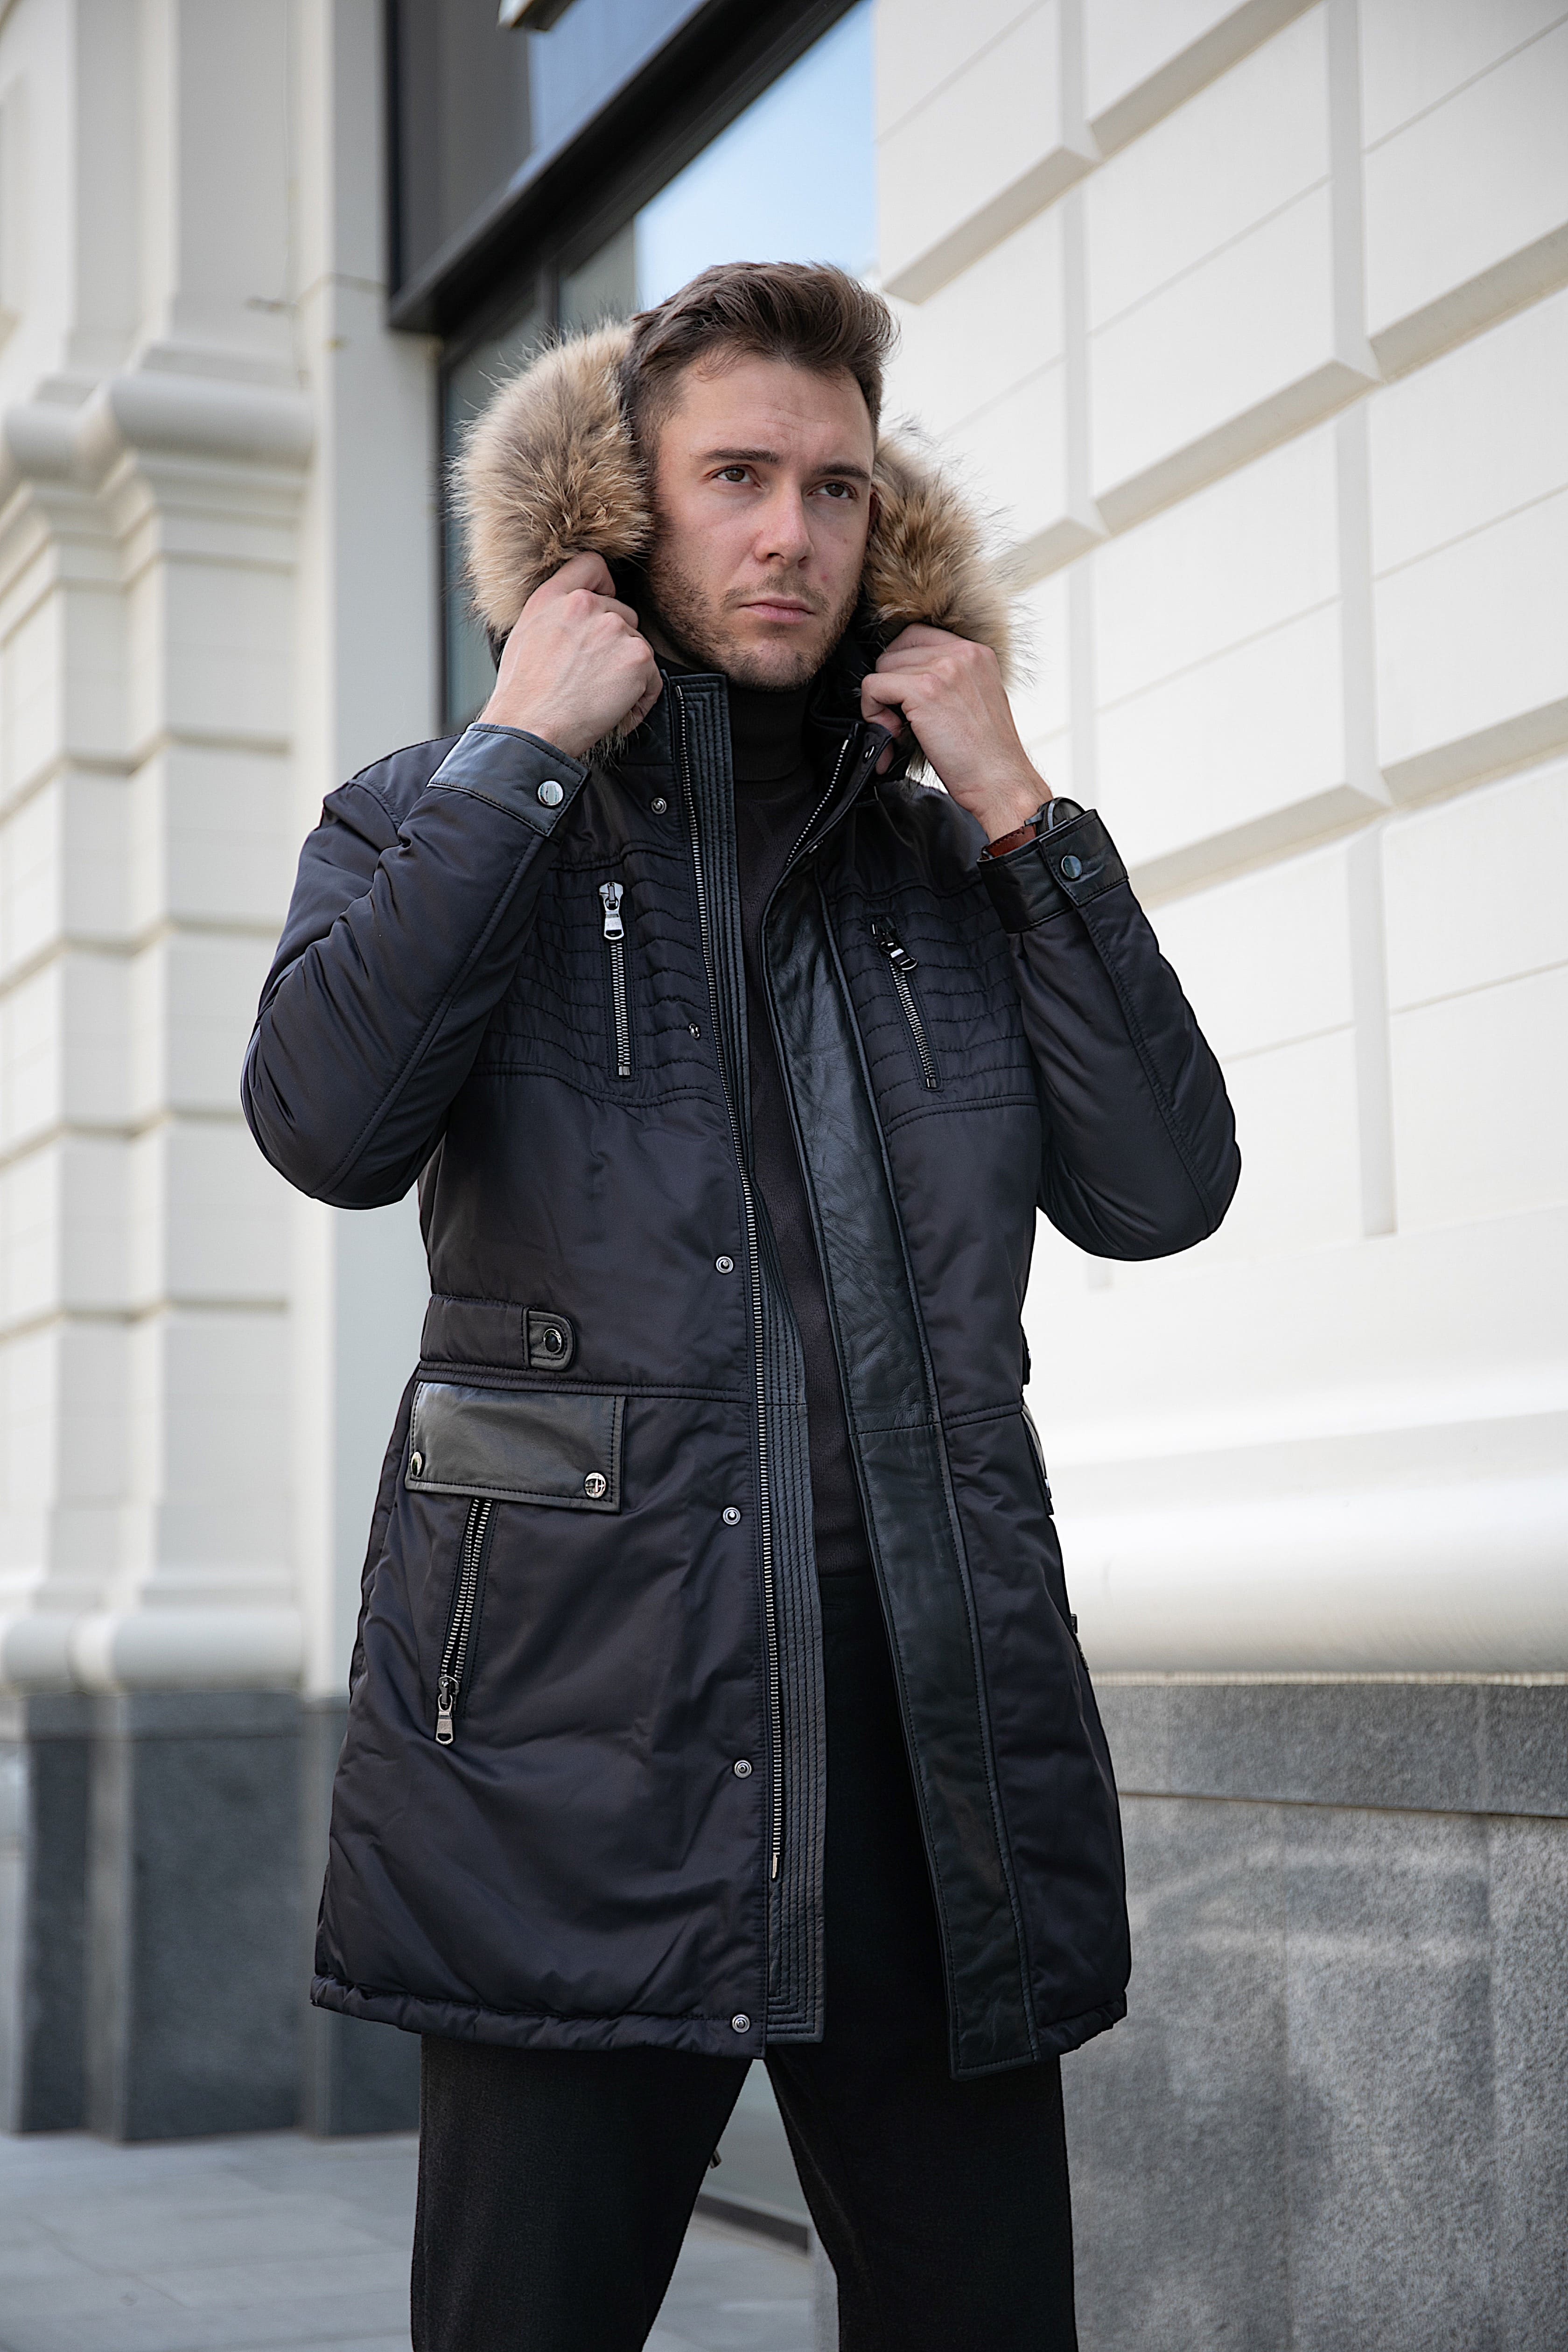 Мужские куртки зима от Custo Barselona. Фото с показа | статья Покупкалюкс